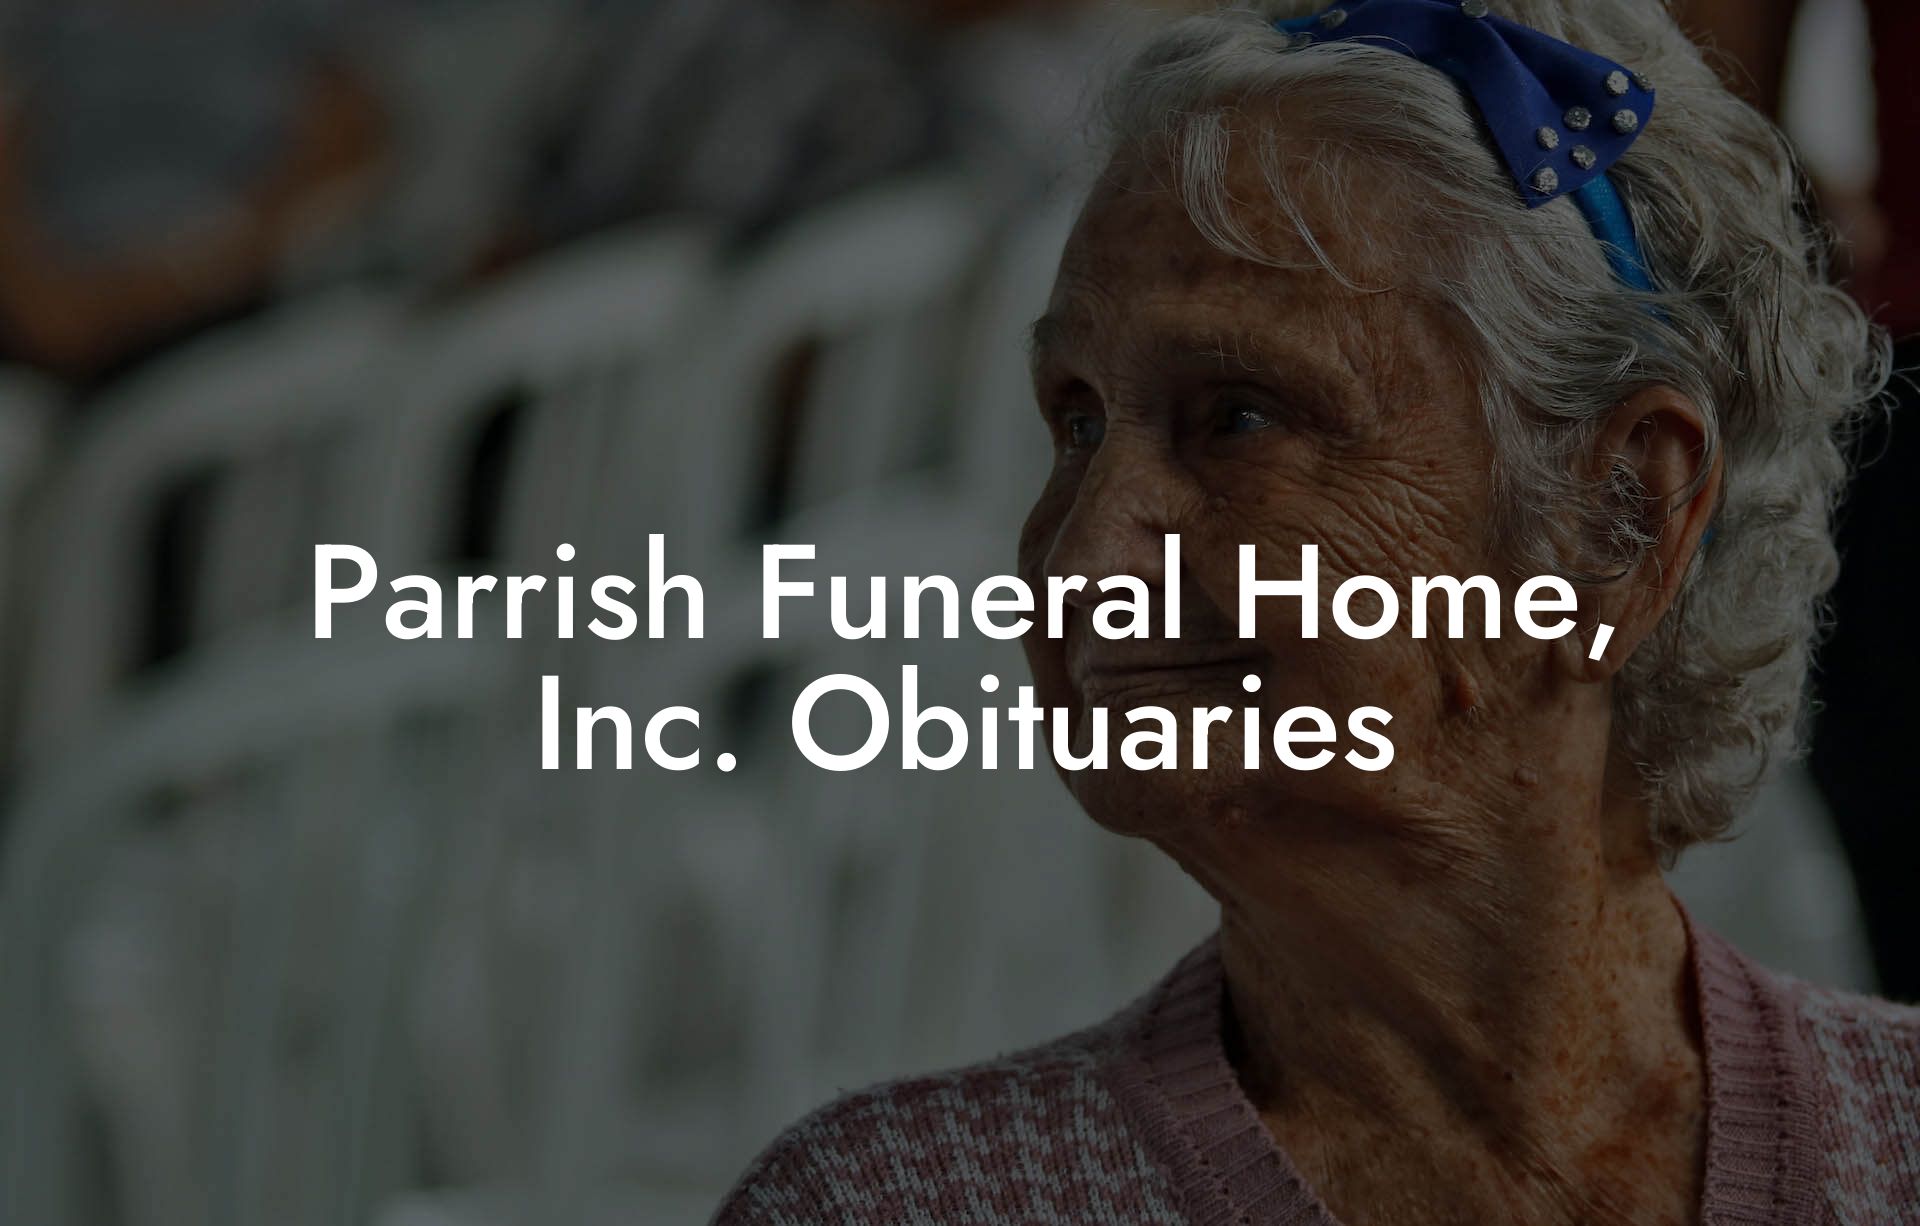 Parrish Funeral Home, Inc. Obituaries